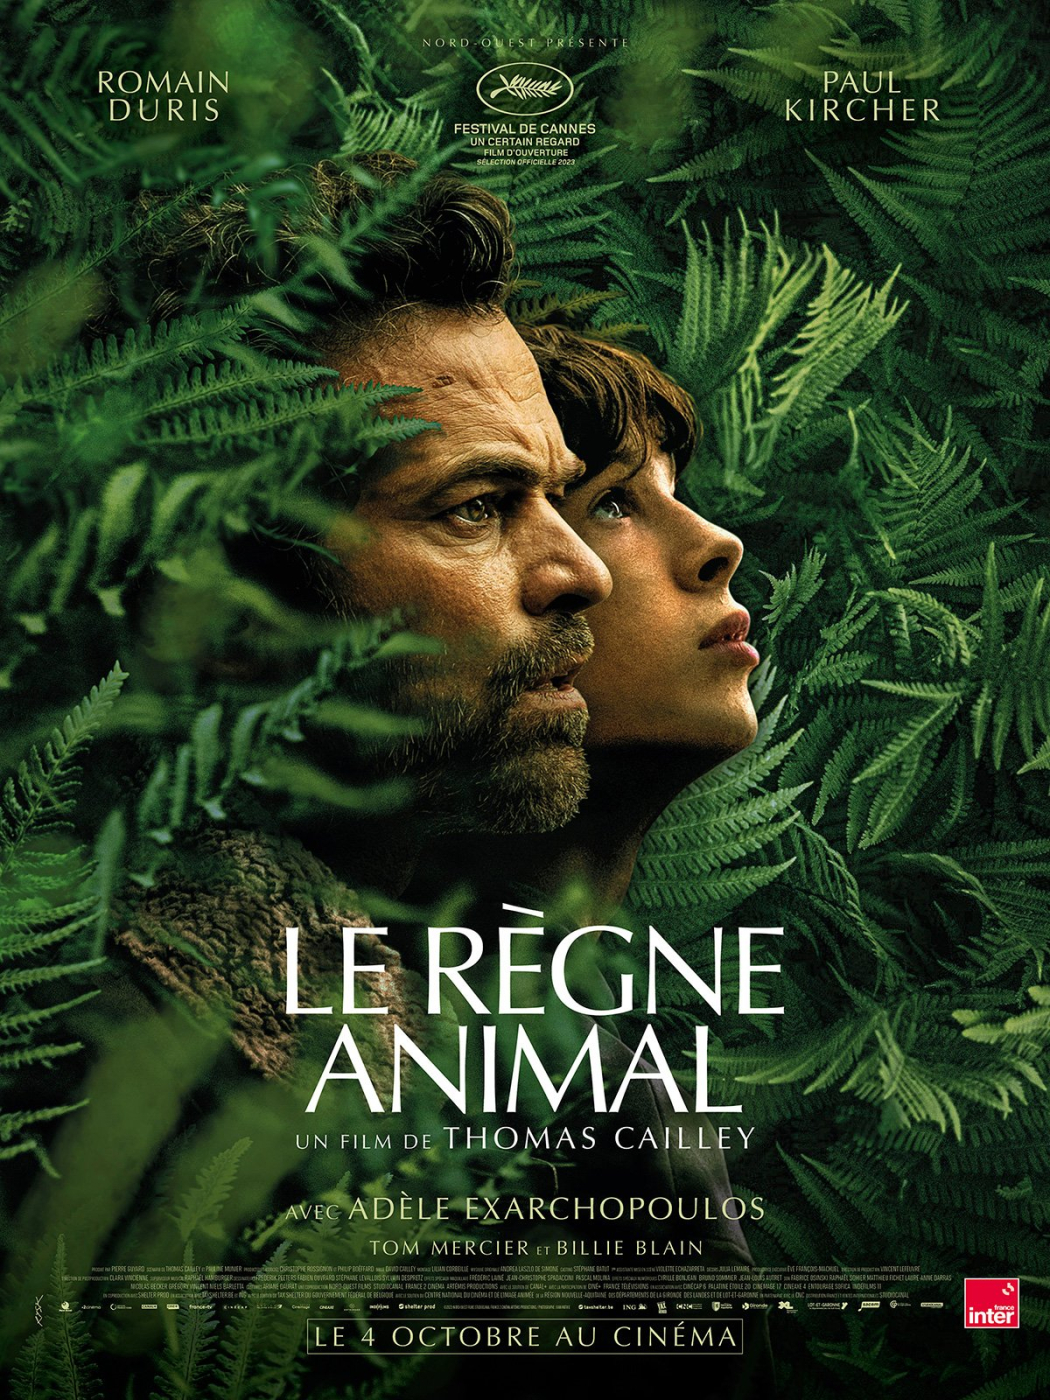 L’Instant Ciné - Retours sur 'Le Règne Animal' L'Instant Ciné L’Instant Ciné - Retours sur 'Le Règne Animal'